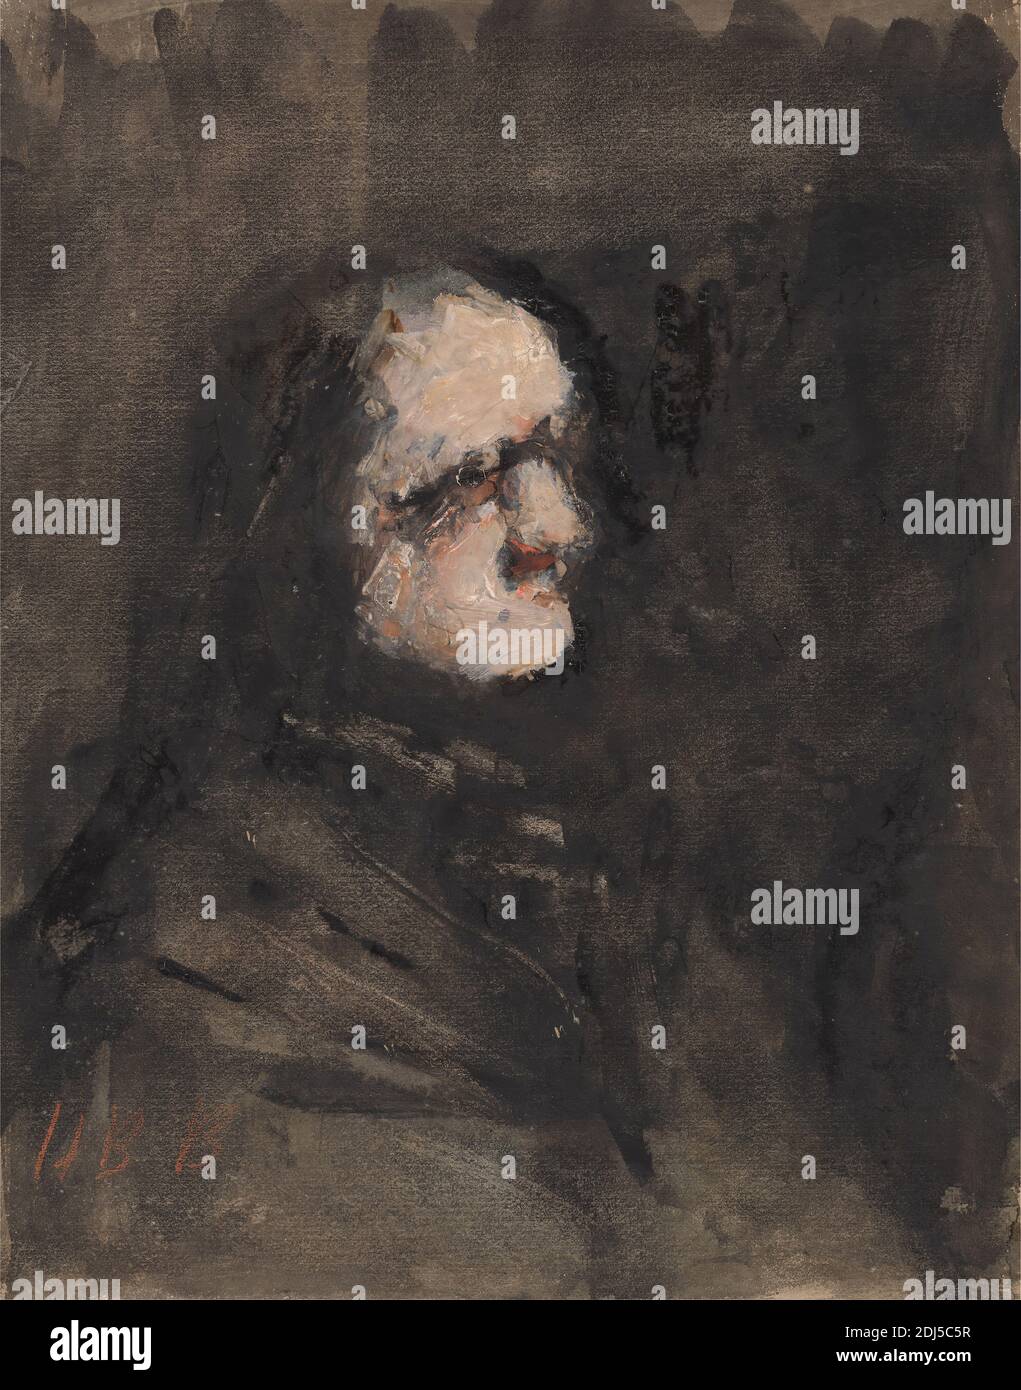 Amouk, After Goya, Hercules Brabazon Brabazon, 1821–1906, British, After Francisco Goya, 1746–1828, spagnolo, non satinato, acquerello e gouache su carta media, leggermente testurizzata, panna, montata su carta in wove beige di spessore moderato, supporto: 7 15/16 x 6 1/4 pollici (20.1 x 15.8 cm) e foglio: 7 13/16 x 6 1/8 pollici (19.8 x 15.6 cm), scuro, uomo, ritratto, profilo (figura Foto Stock